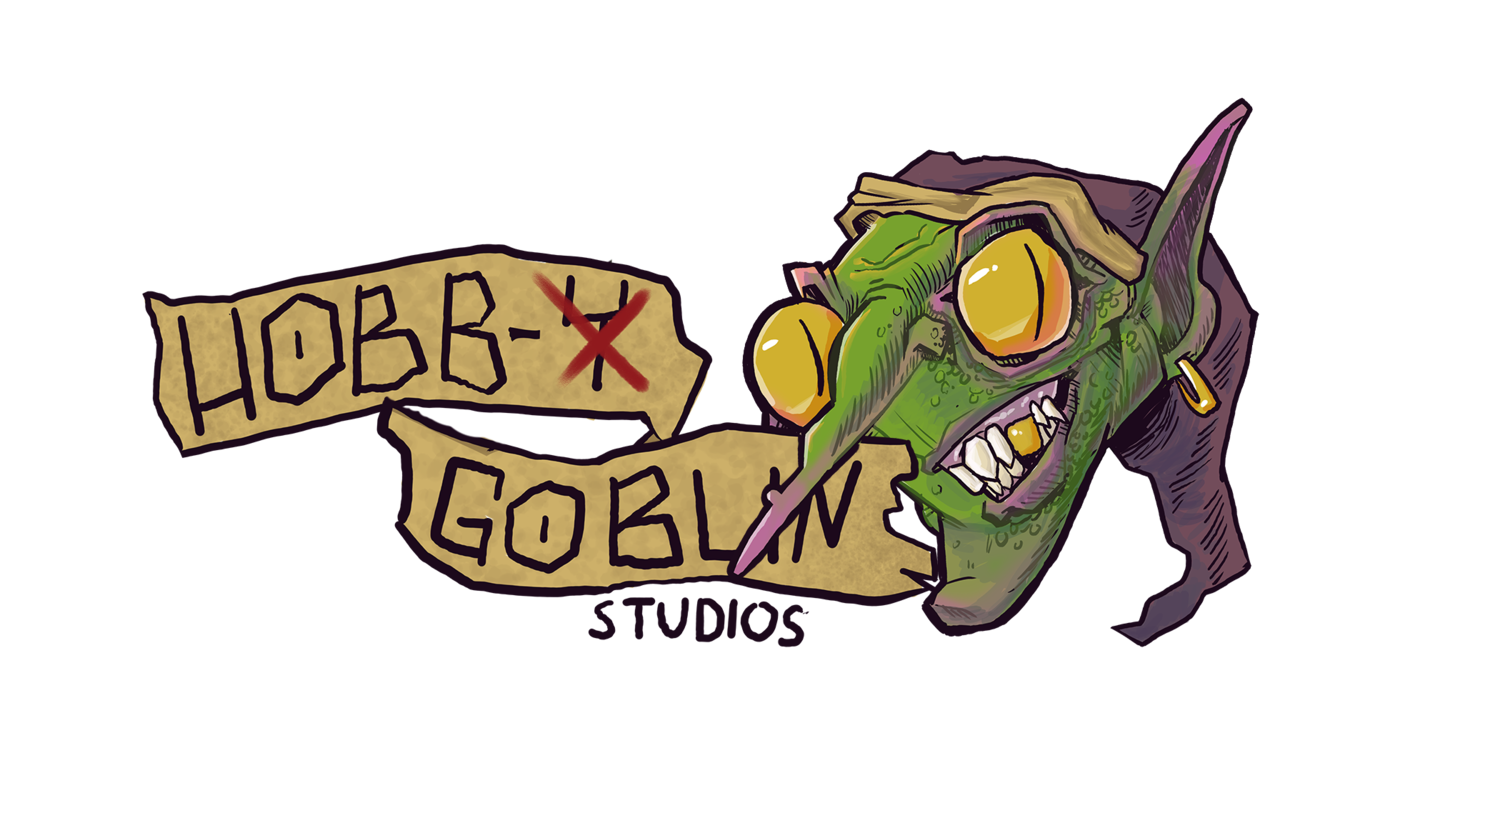 Hobb-y Goblin Studios